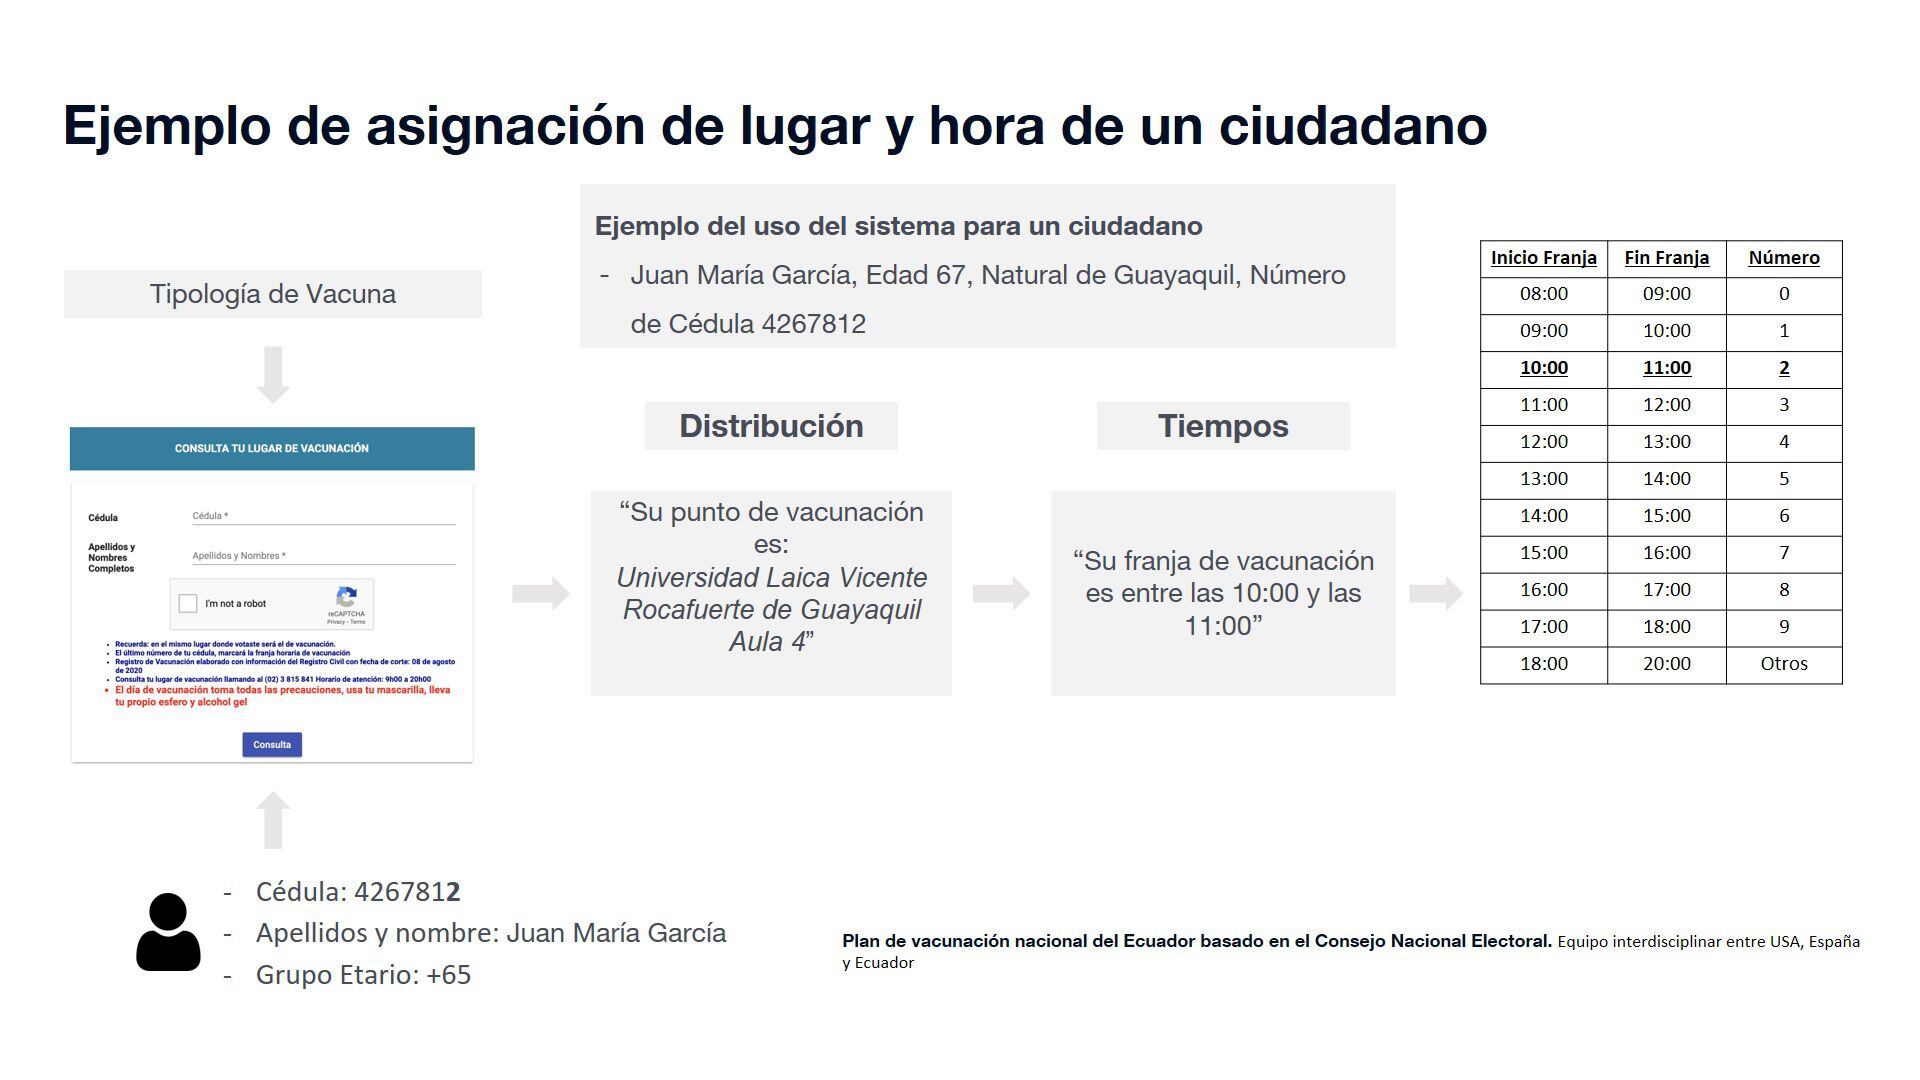 Un ejemplo de cómo sería la convocatoria para la ciudadanía ecuatoriana, si se utilizara el padrón electoral, según la propuesta de un gremio de expertos locales.